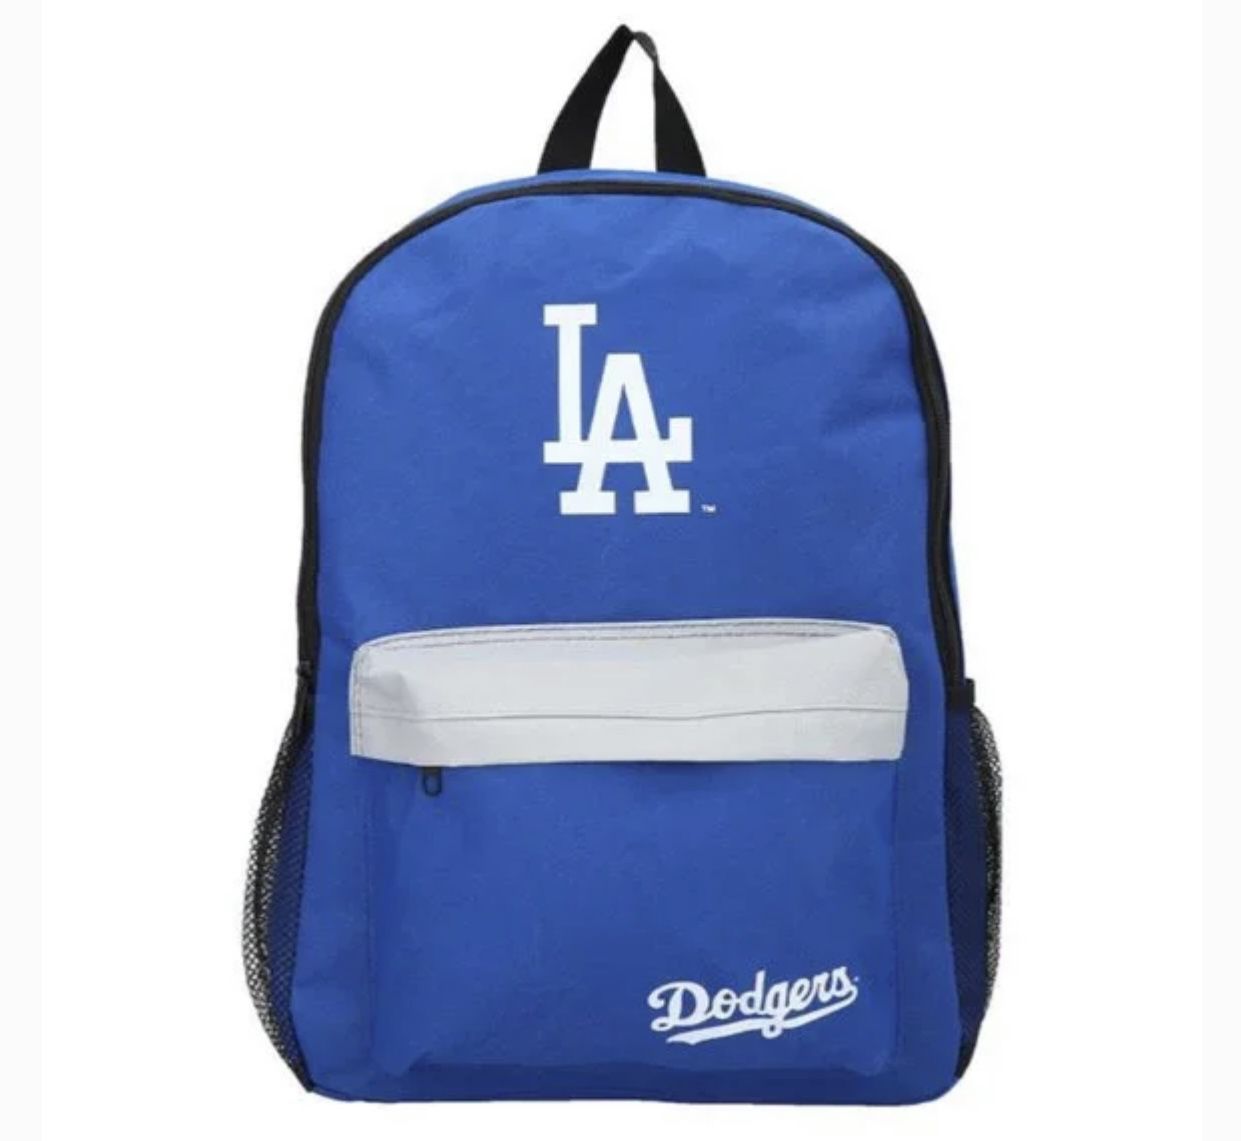 Dodgers Official Licensed Backpack